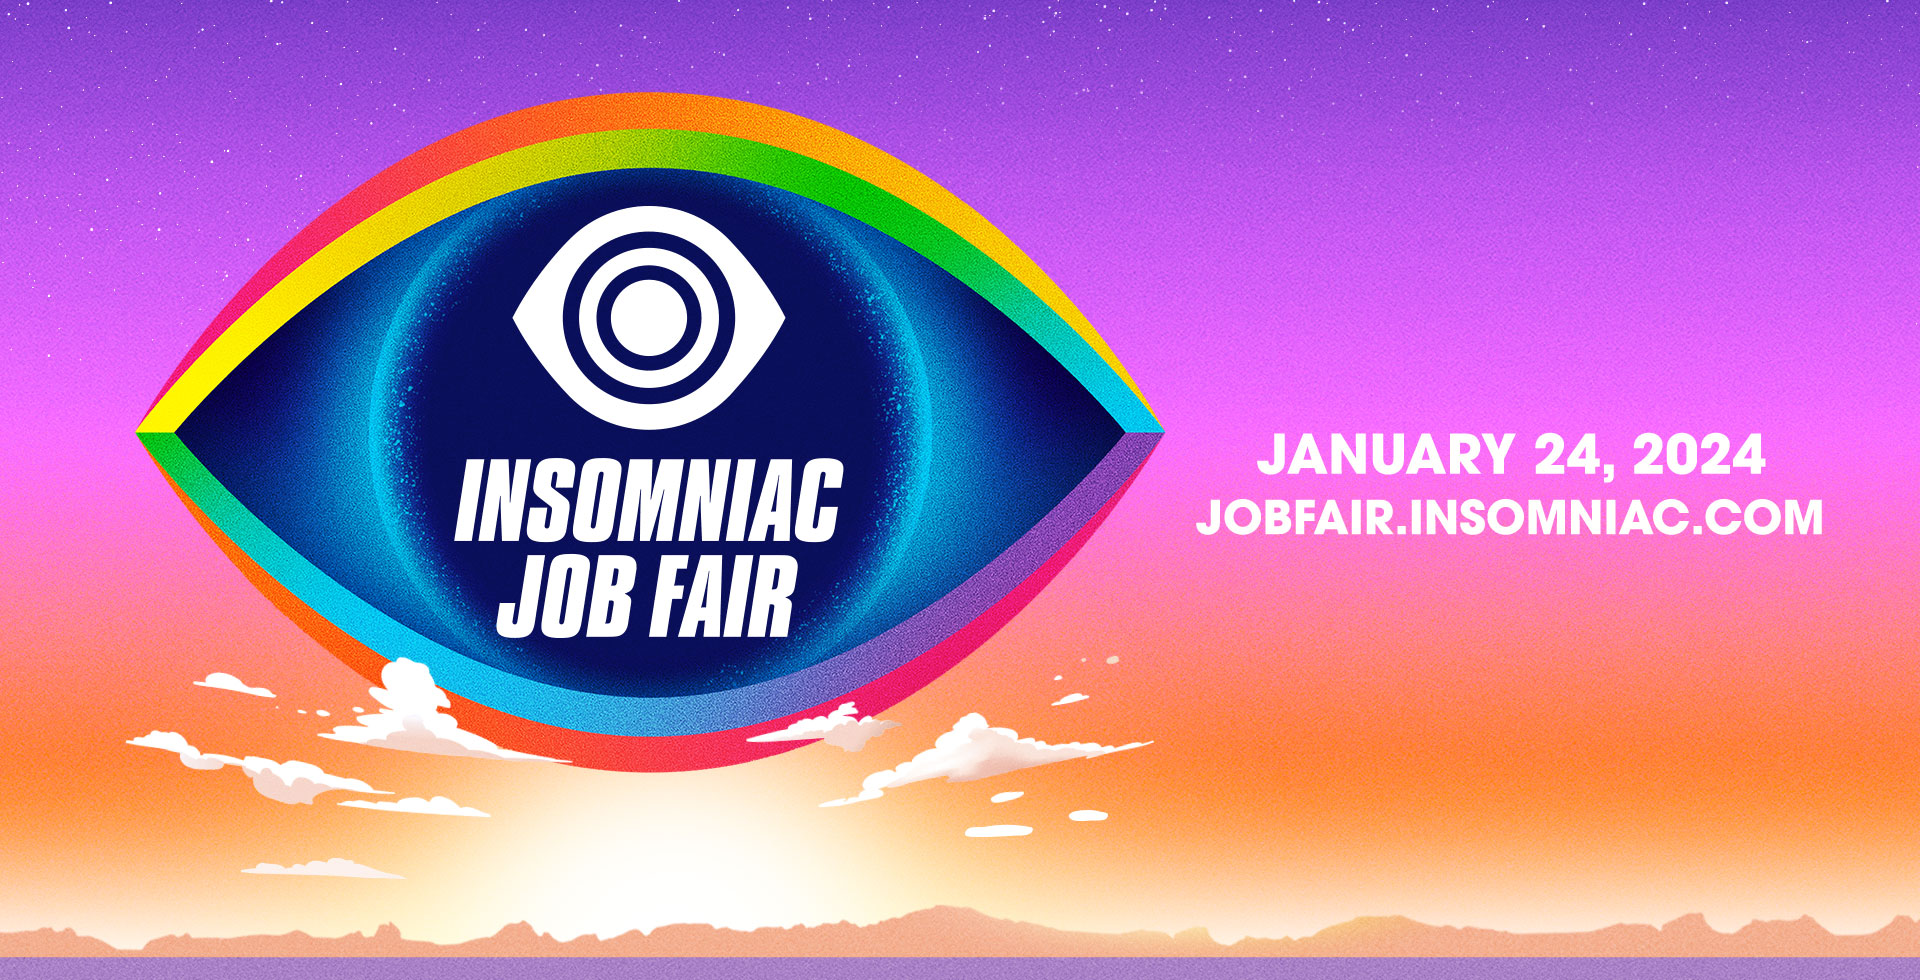 Insomniac Job Fair 2024 Insomniac